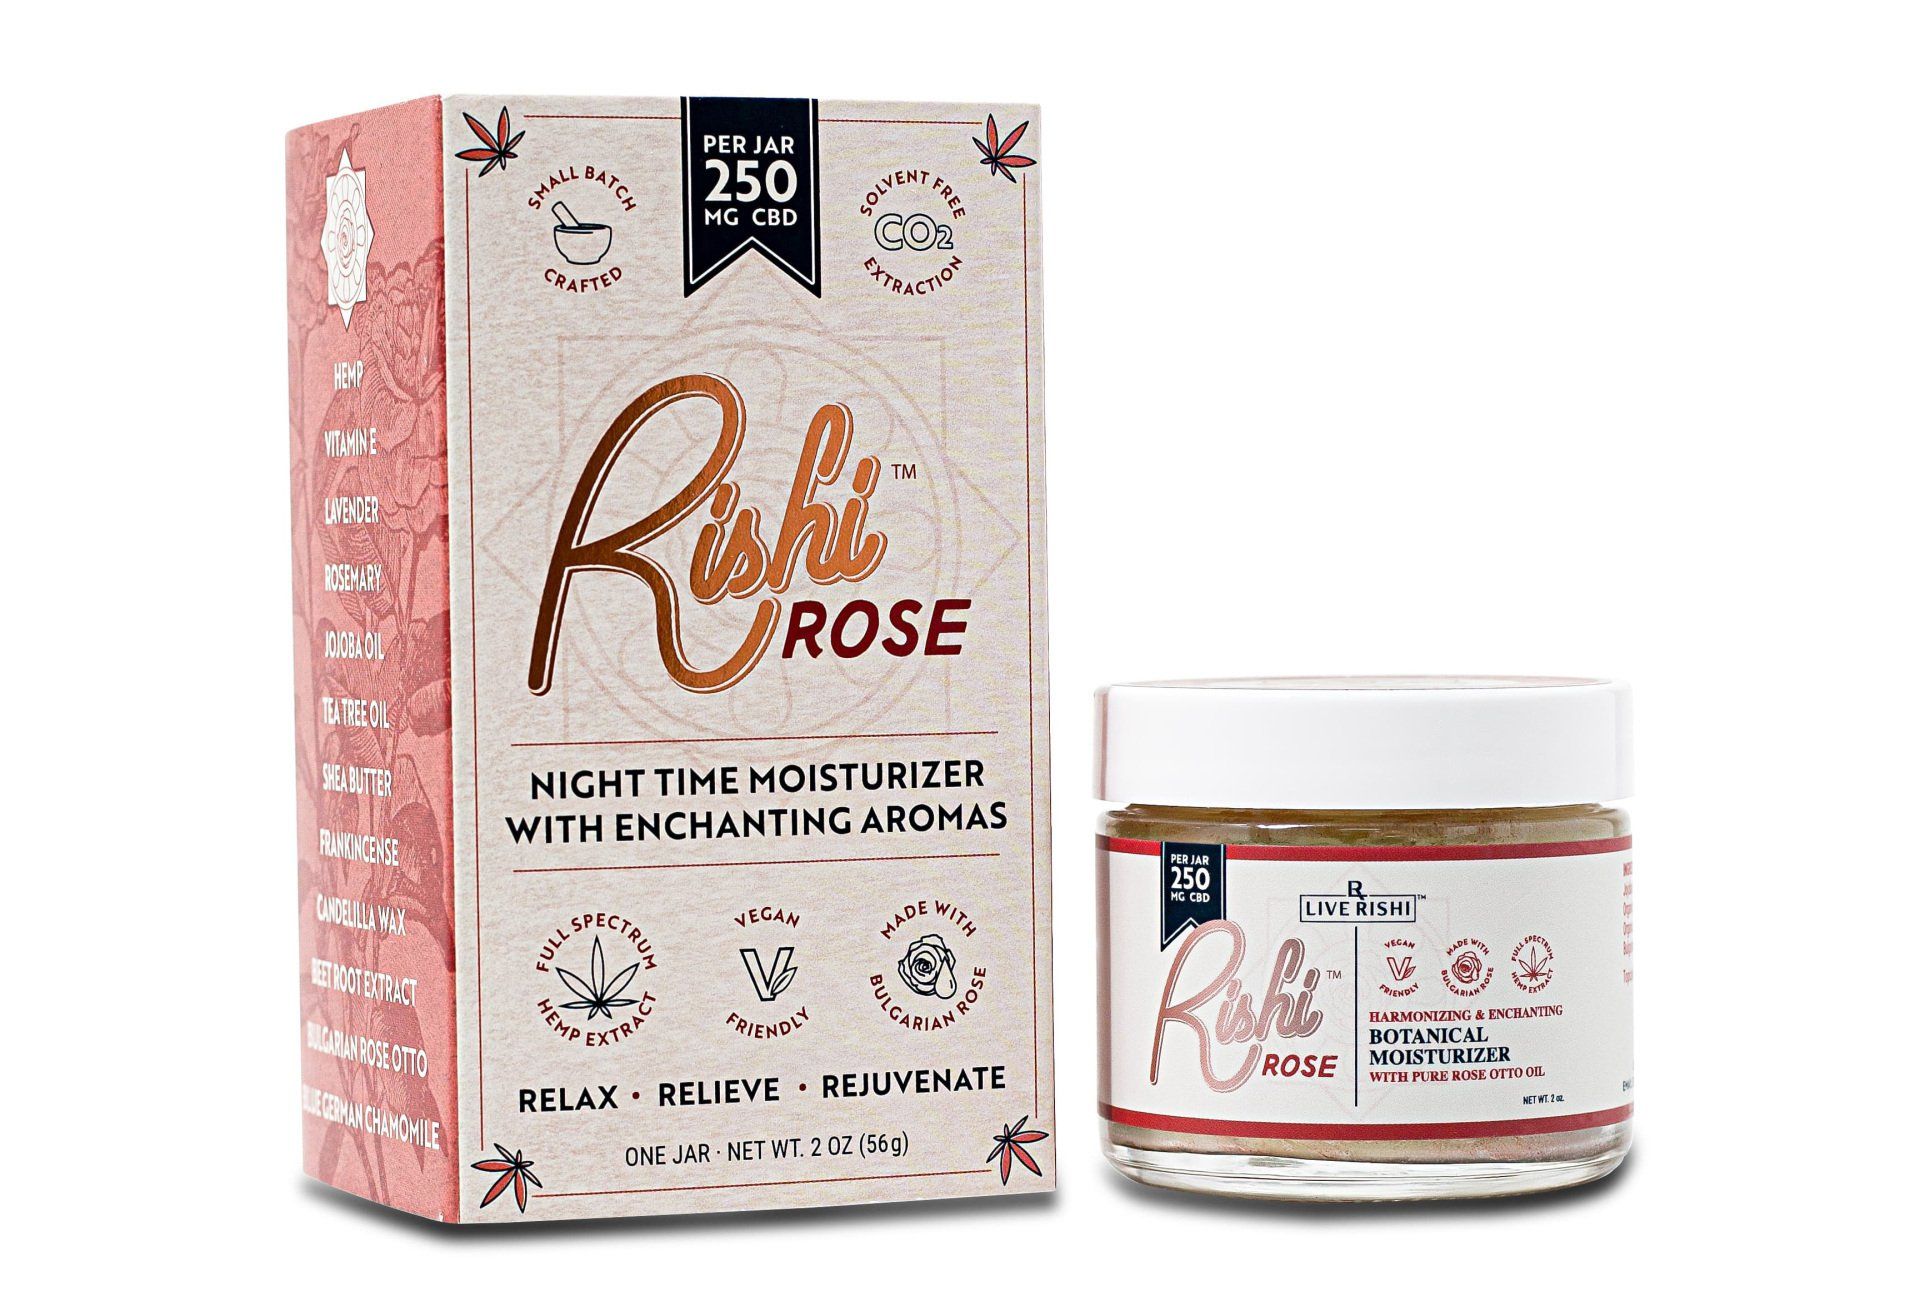 Rishi Rose